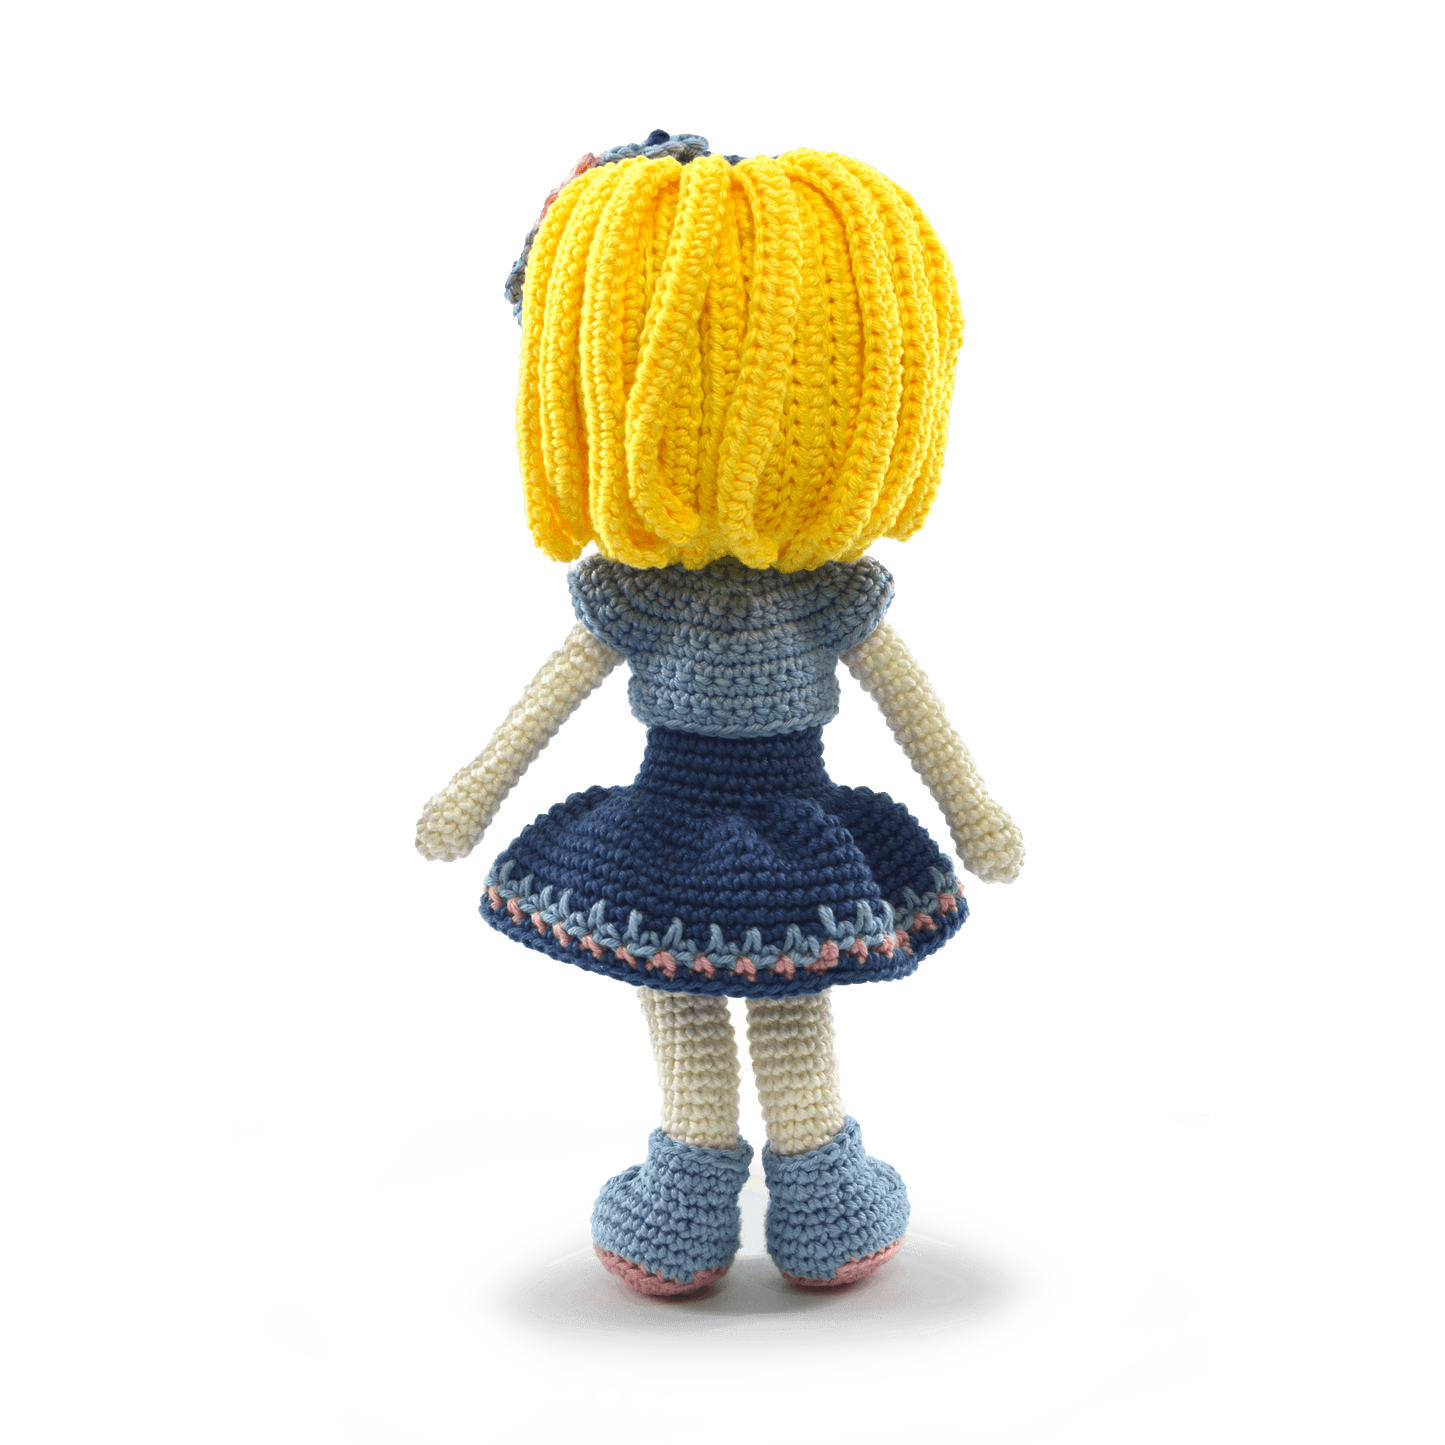 Circulo Amigurumi Doll Kits 01 Amy - Leo Hobby